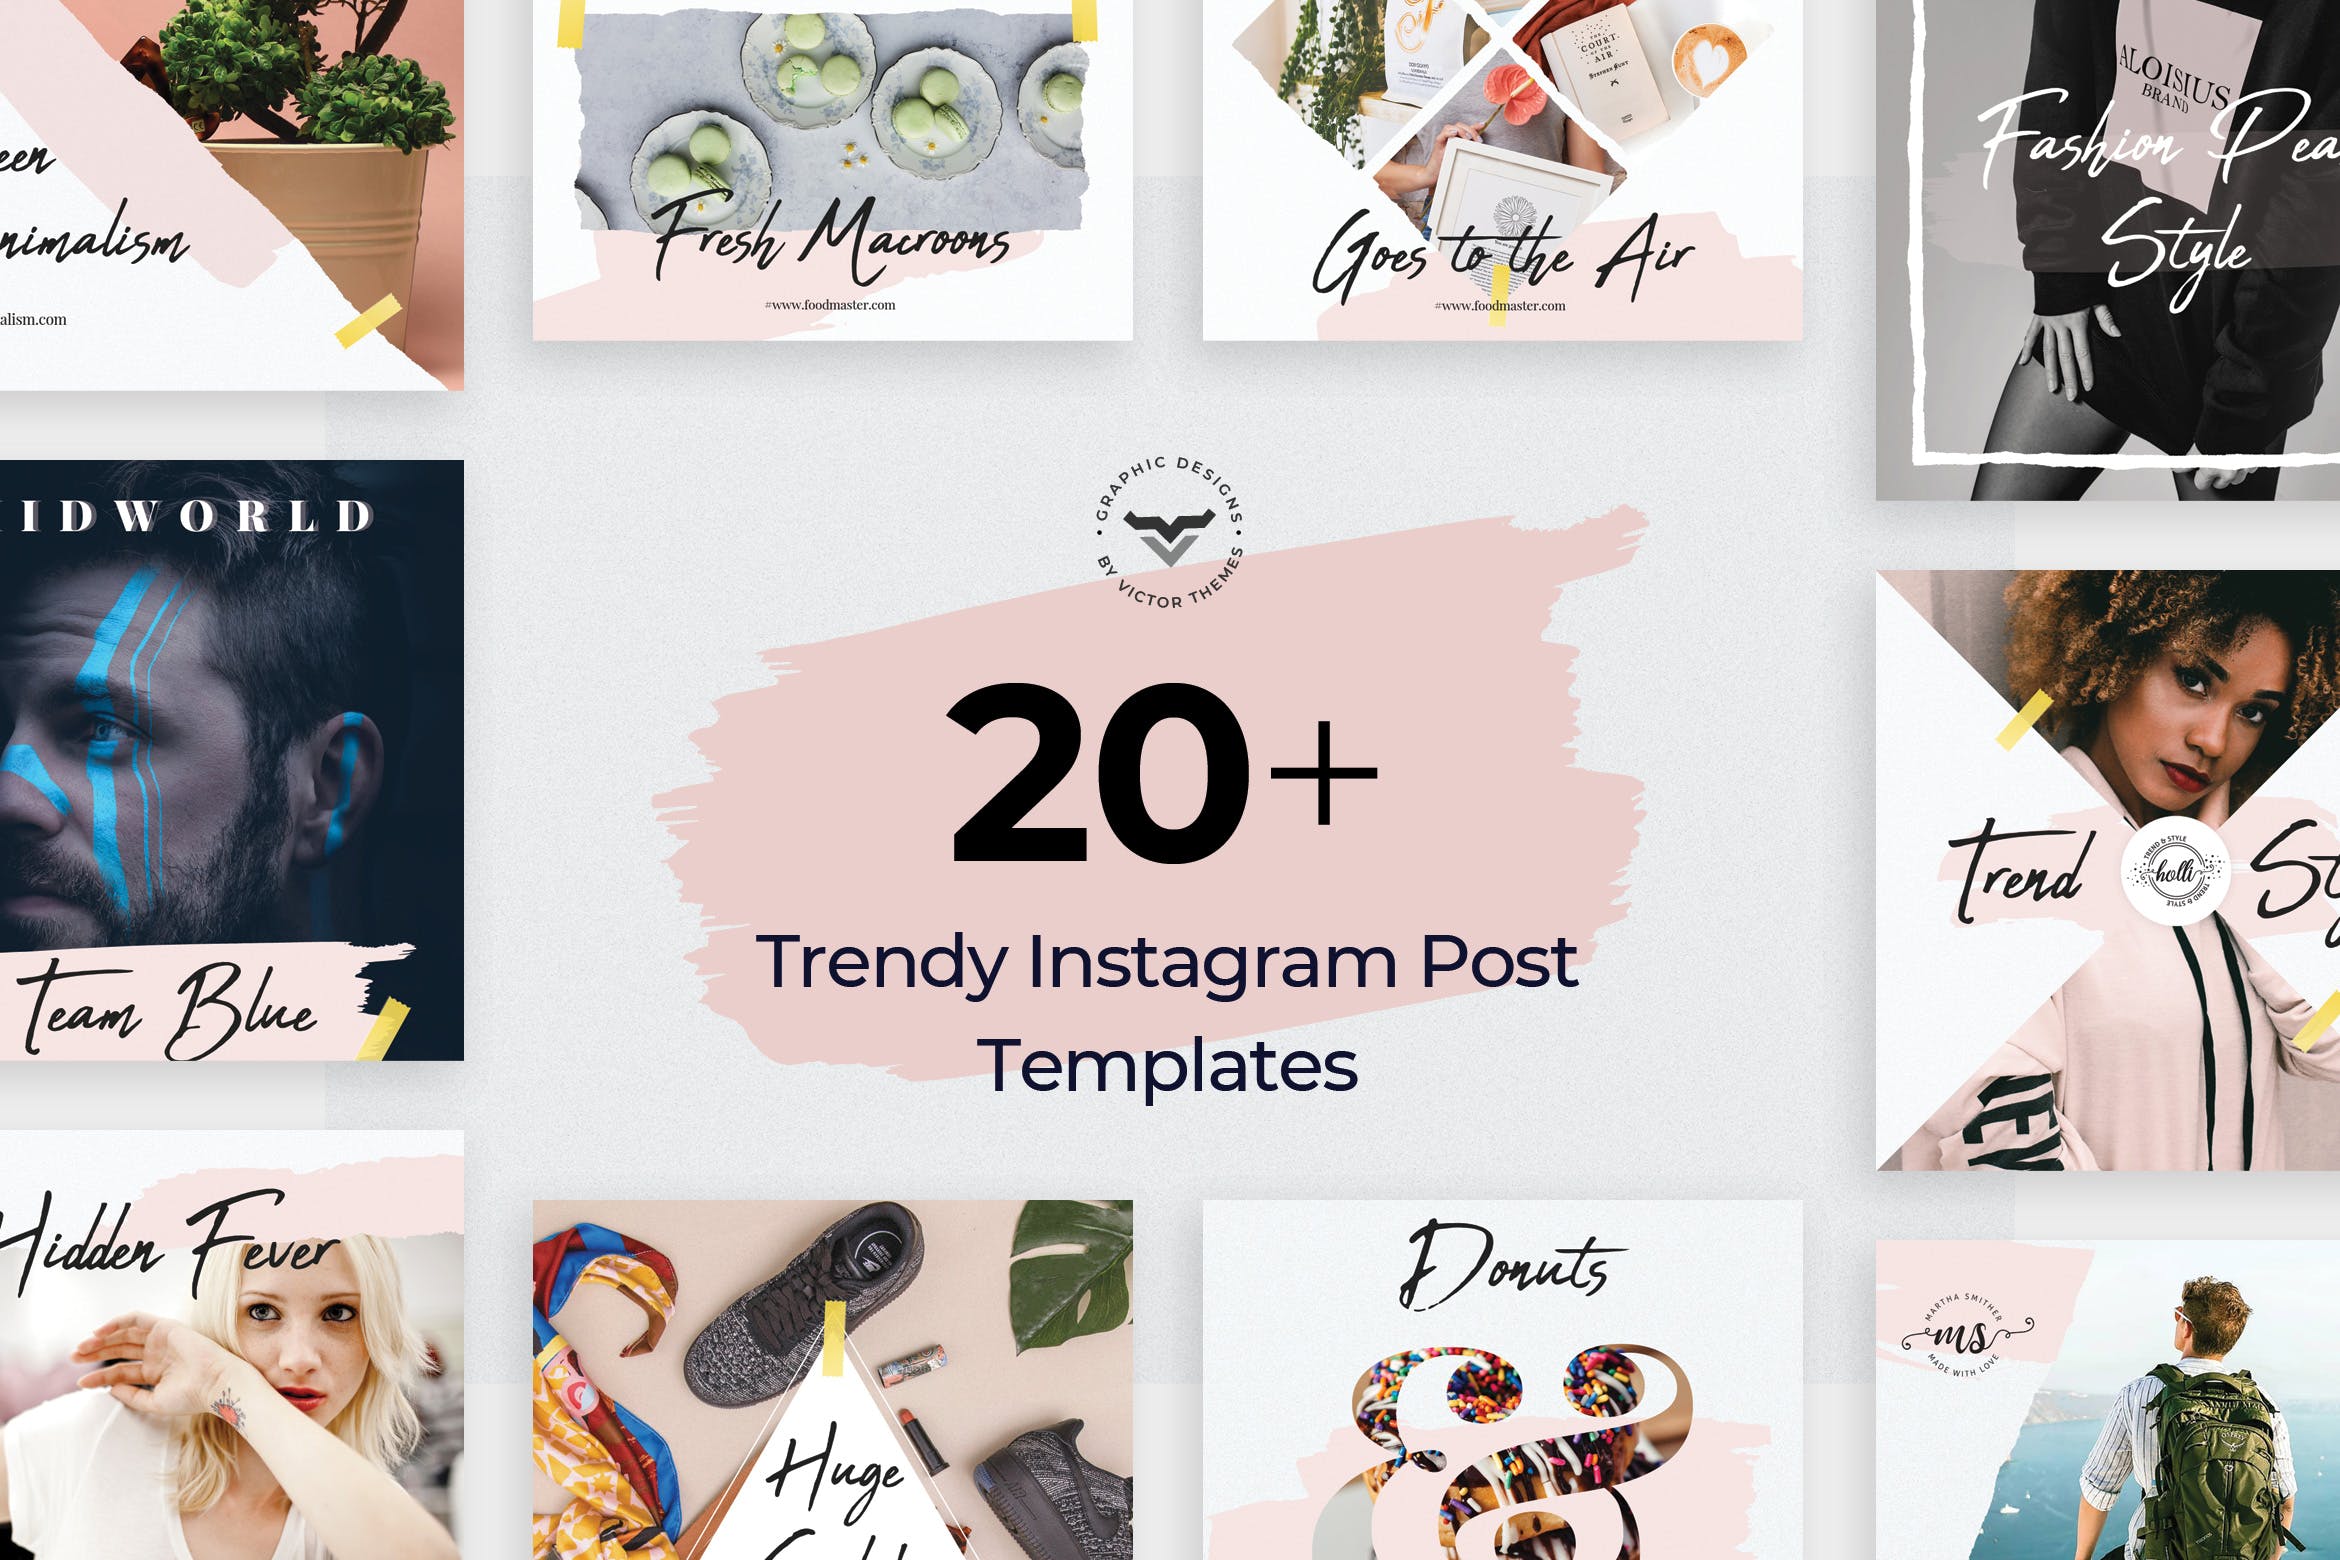 20+创意便利贴设计风格Instagram社交贴图模板16图库精选 Instagram Post Templates插图